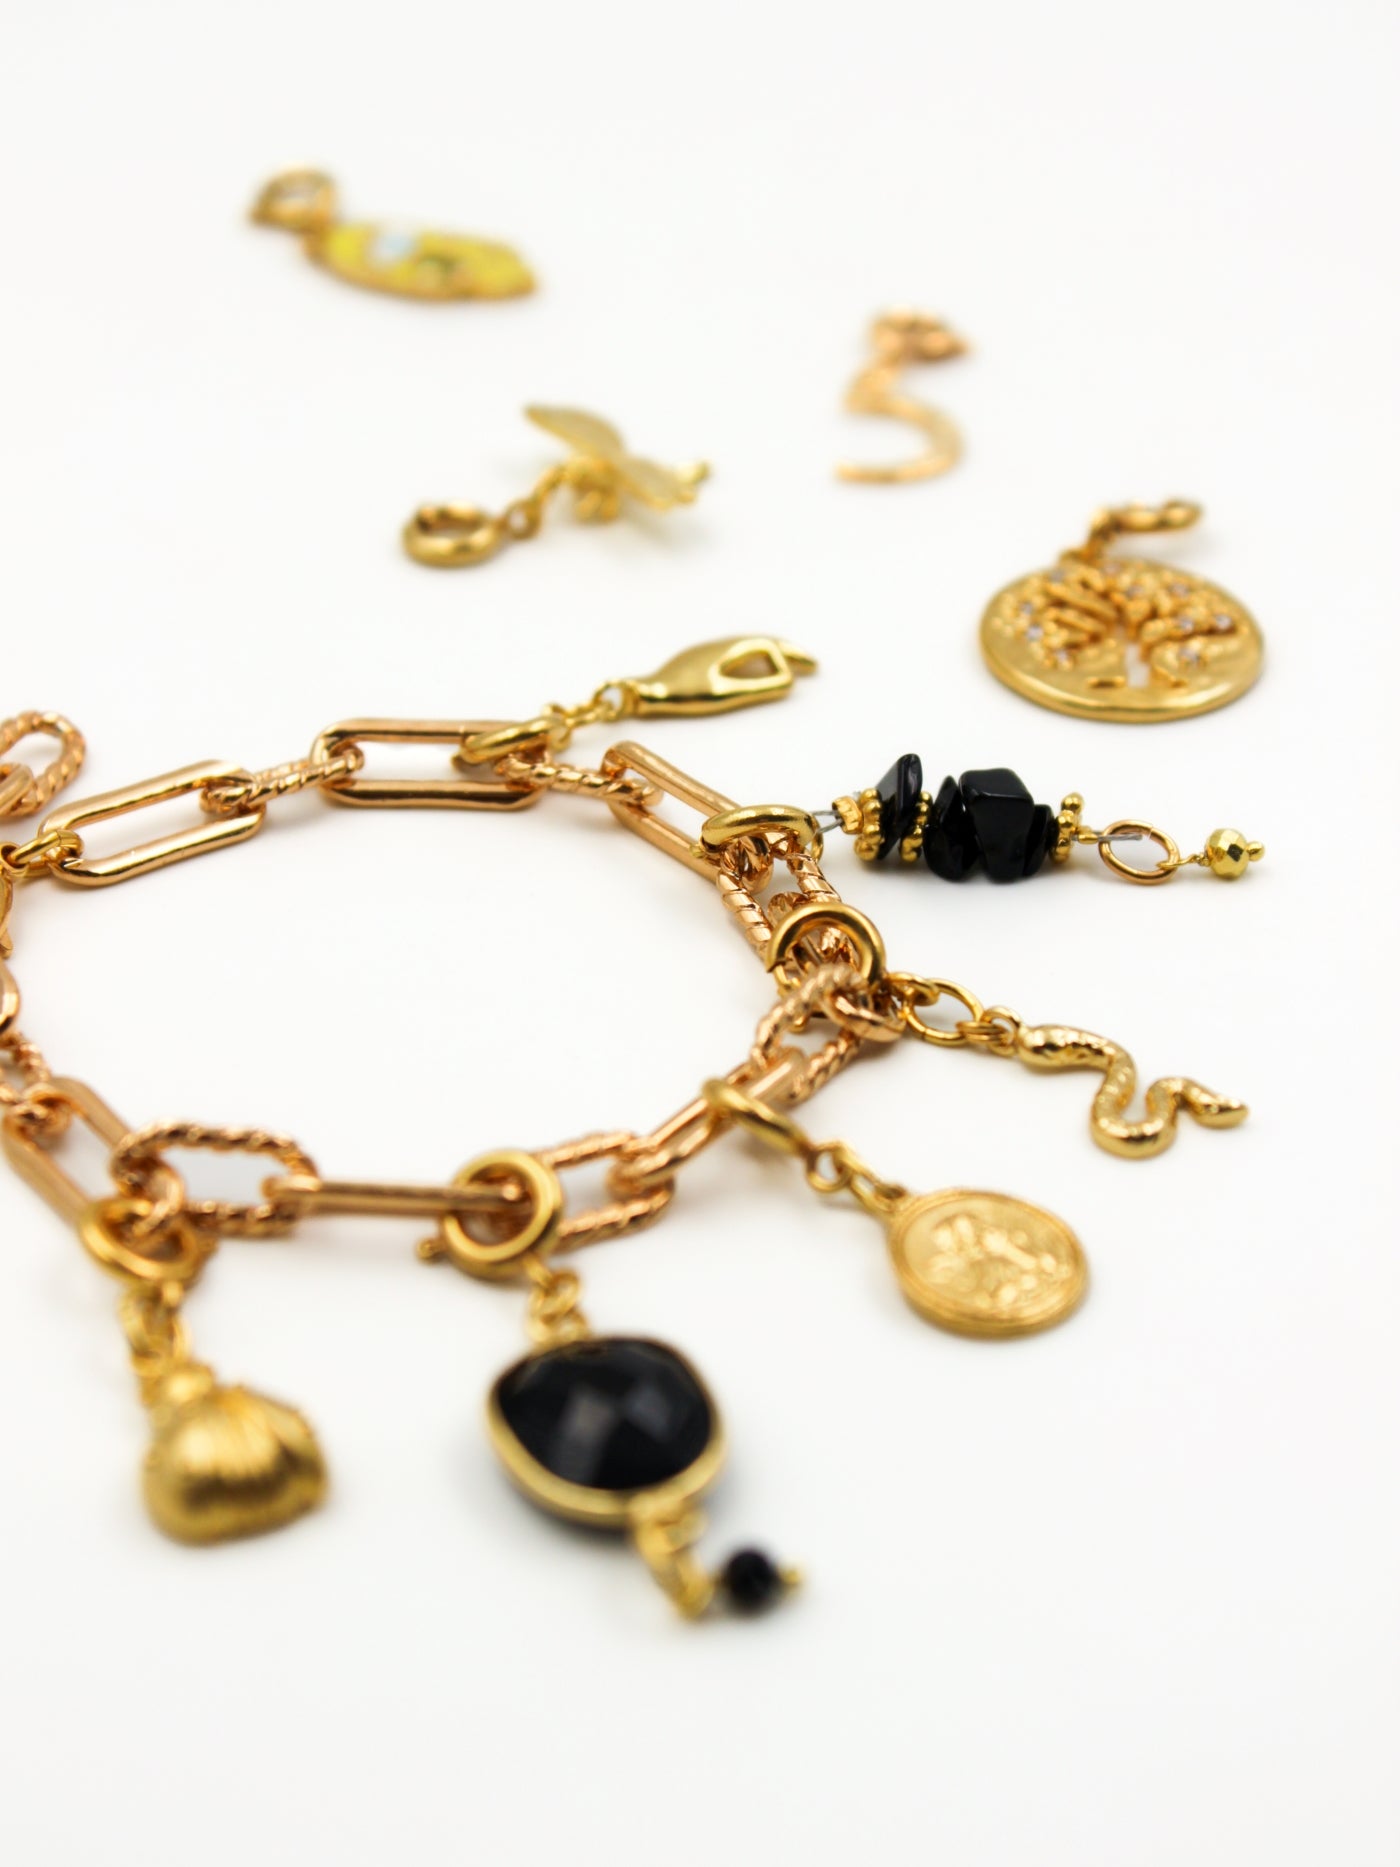 Composition de charms sur le bracelet en mailles torsadés de la gamme GRIGRI - L'Atelier des Dames